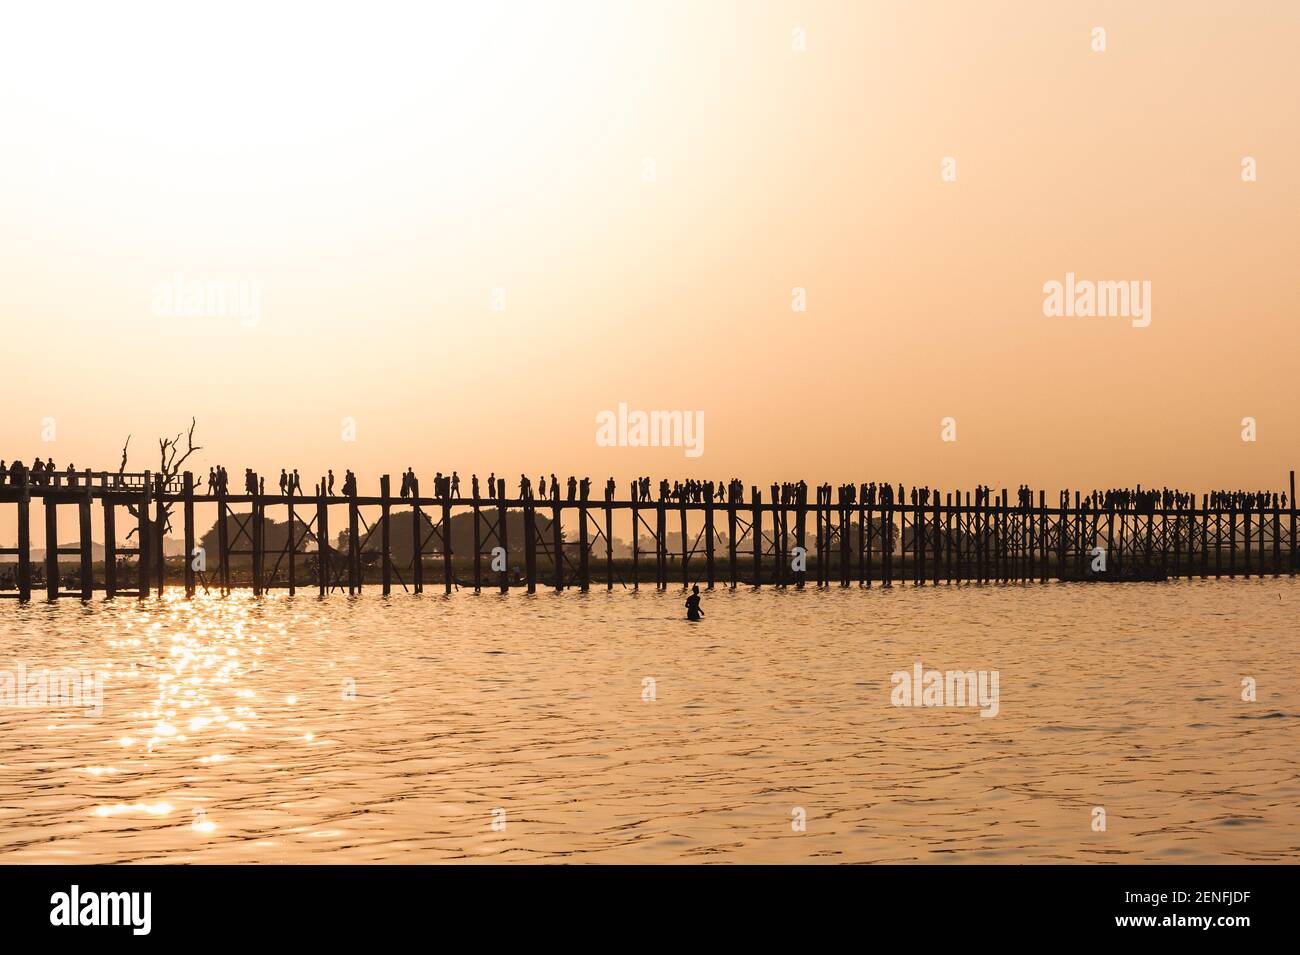 Sonnenuntergang mit Silhouette von u-bein Brücke in Myanmar Stockfoto